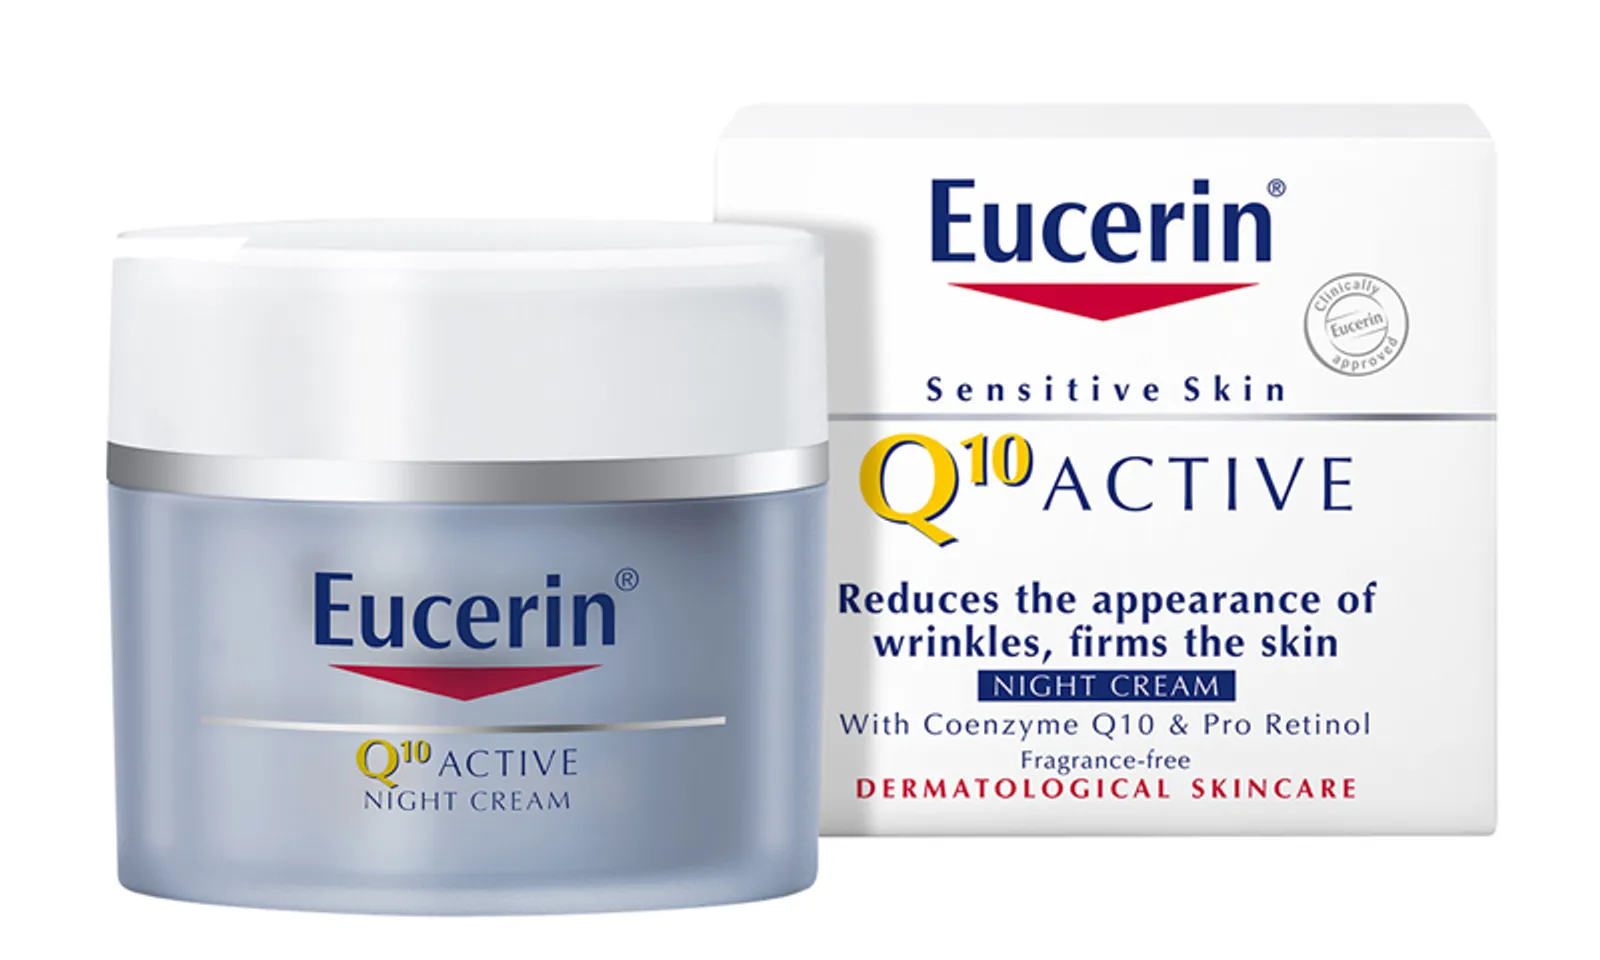 Kem dưỡng ẩm Eucerin được đặc chế theo công thức đặc biệt dành riêng cho da dầu mụn